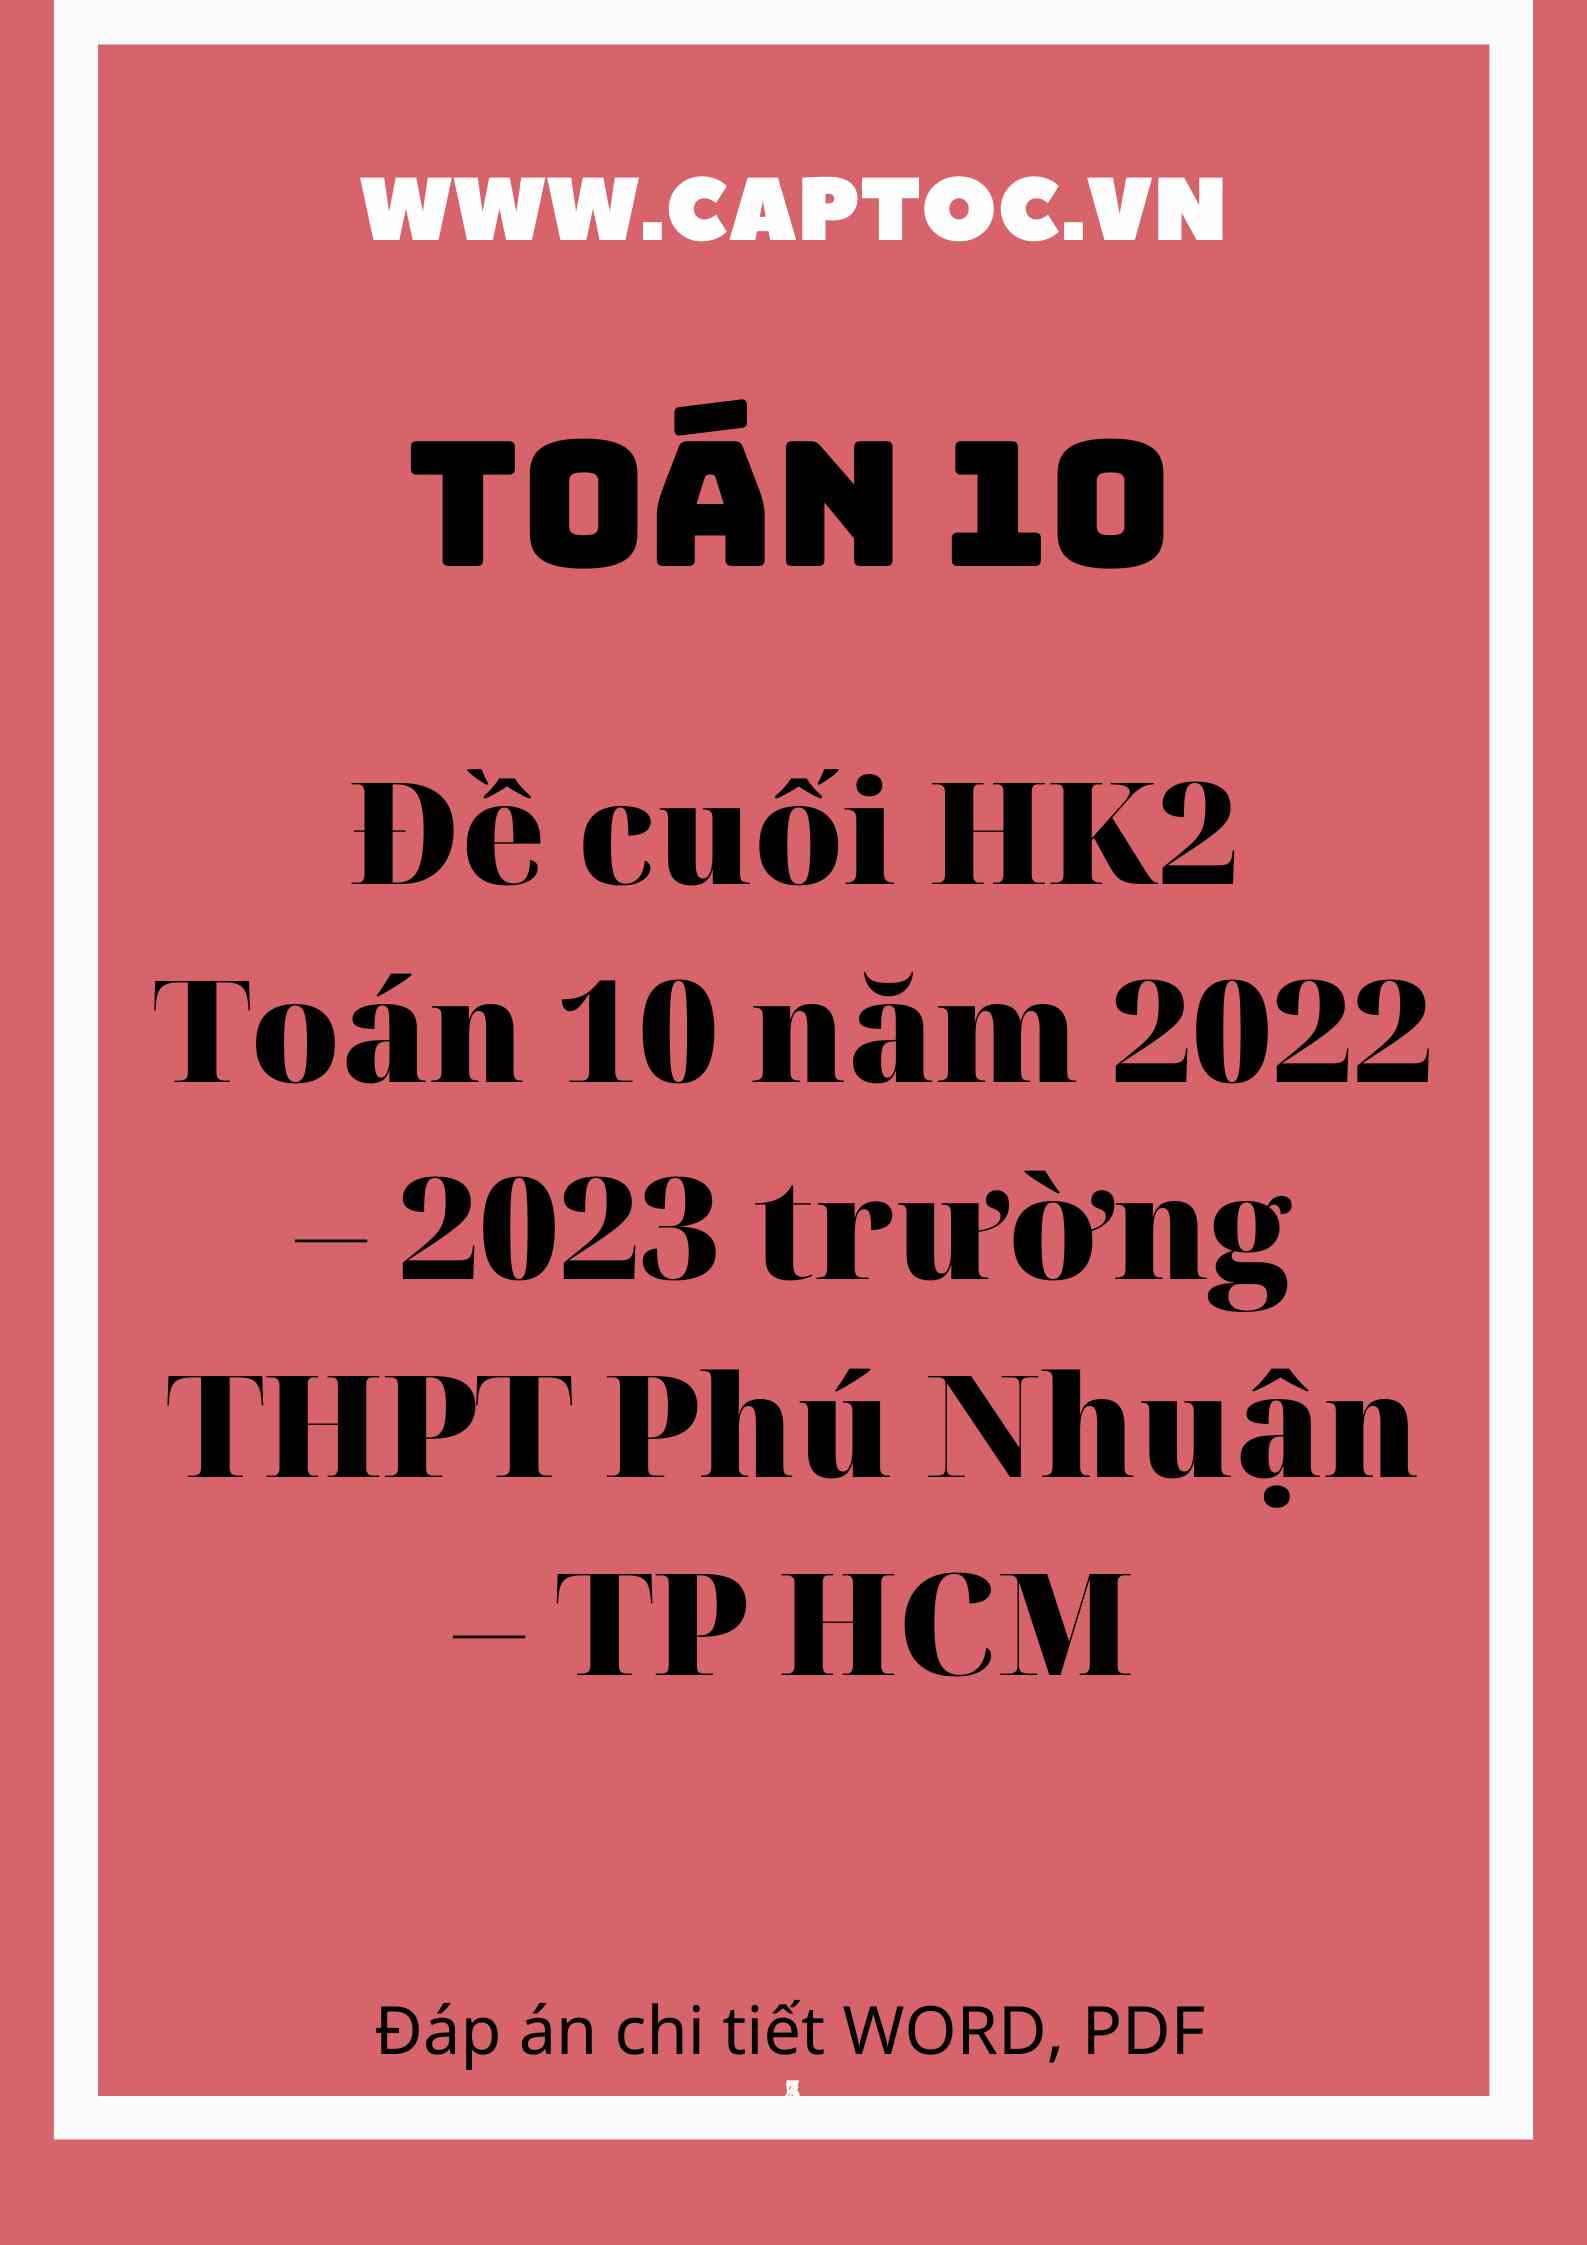 Đề cuối HK2 Toán 10 năm 2022 – 2023 trường THPT Phú Nhuận – TP HCM